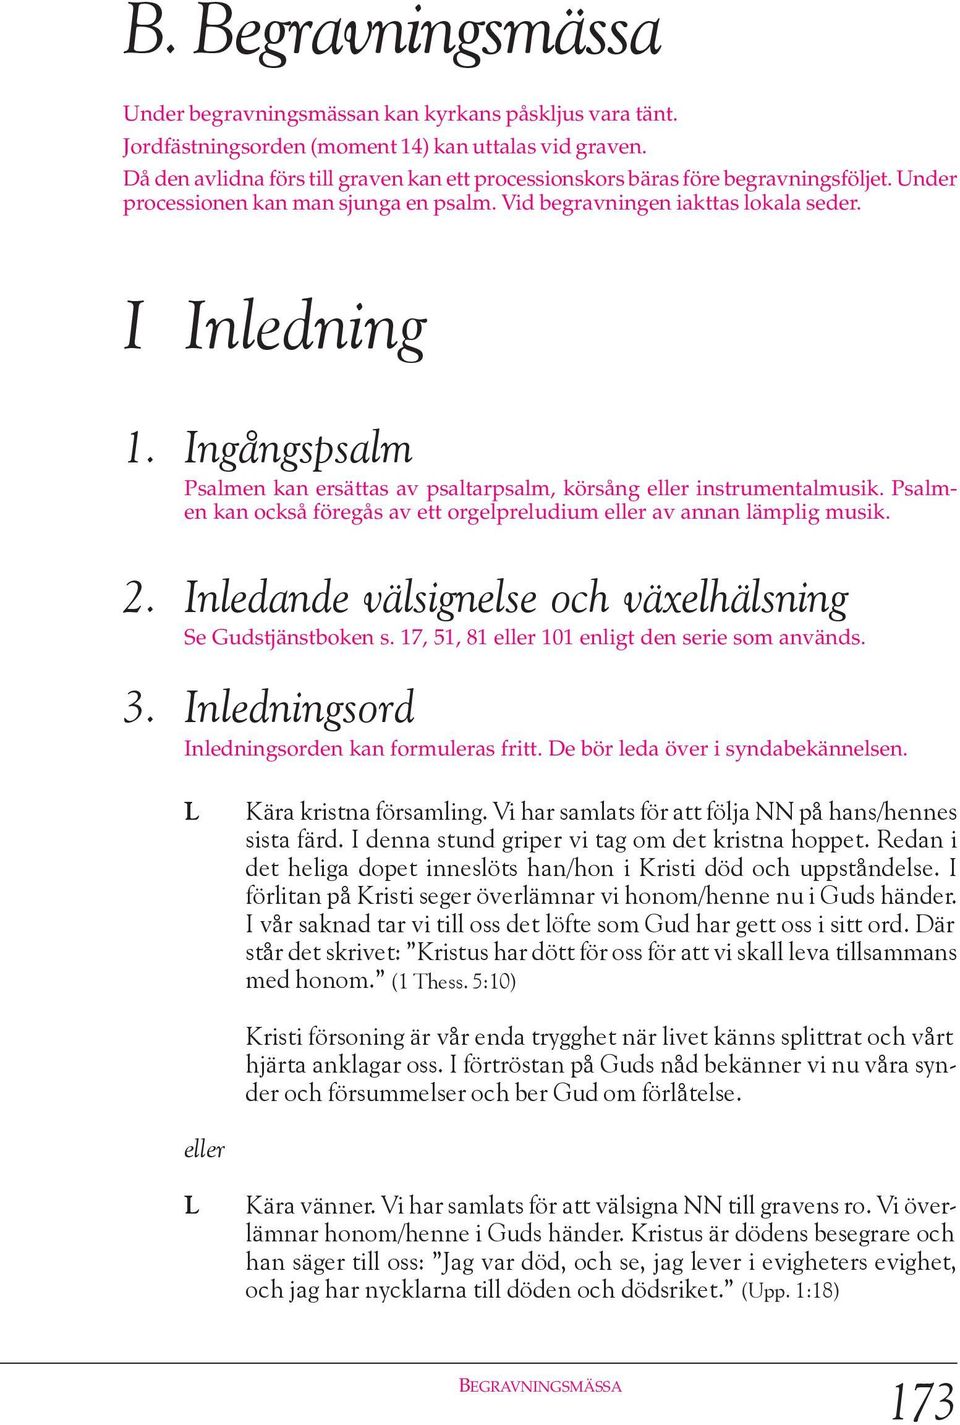 I Inledning Ingångspsalm Psalmen kan ersättas av psaltarpsalm, körsång instrumentalmusik. Psalmen kan också föregås av ett orgelpreludium av annan lämplig musik.